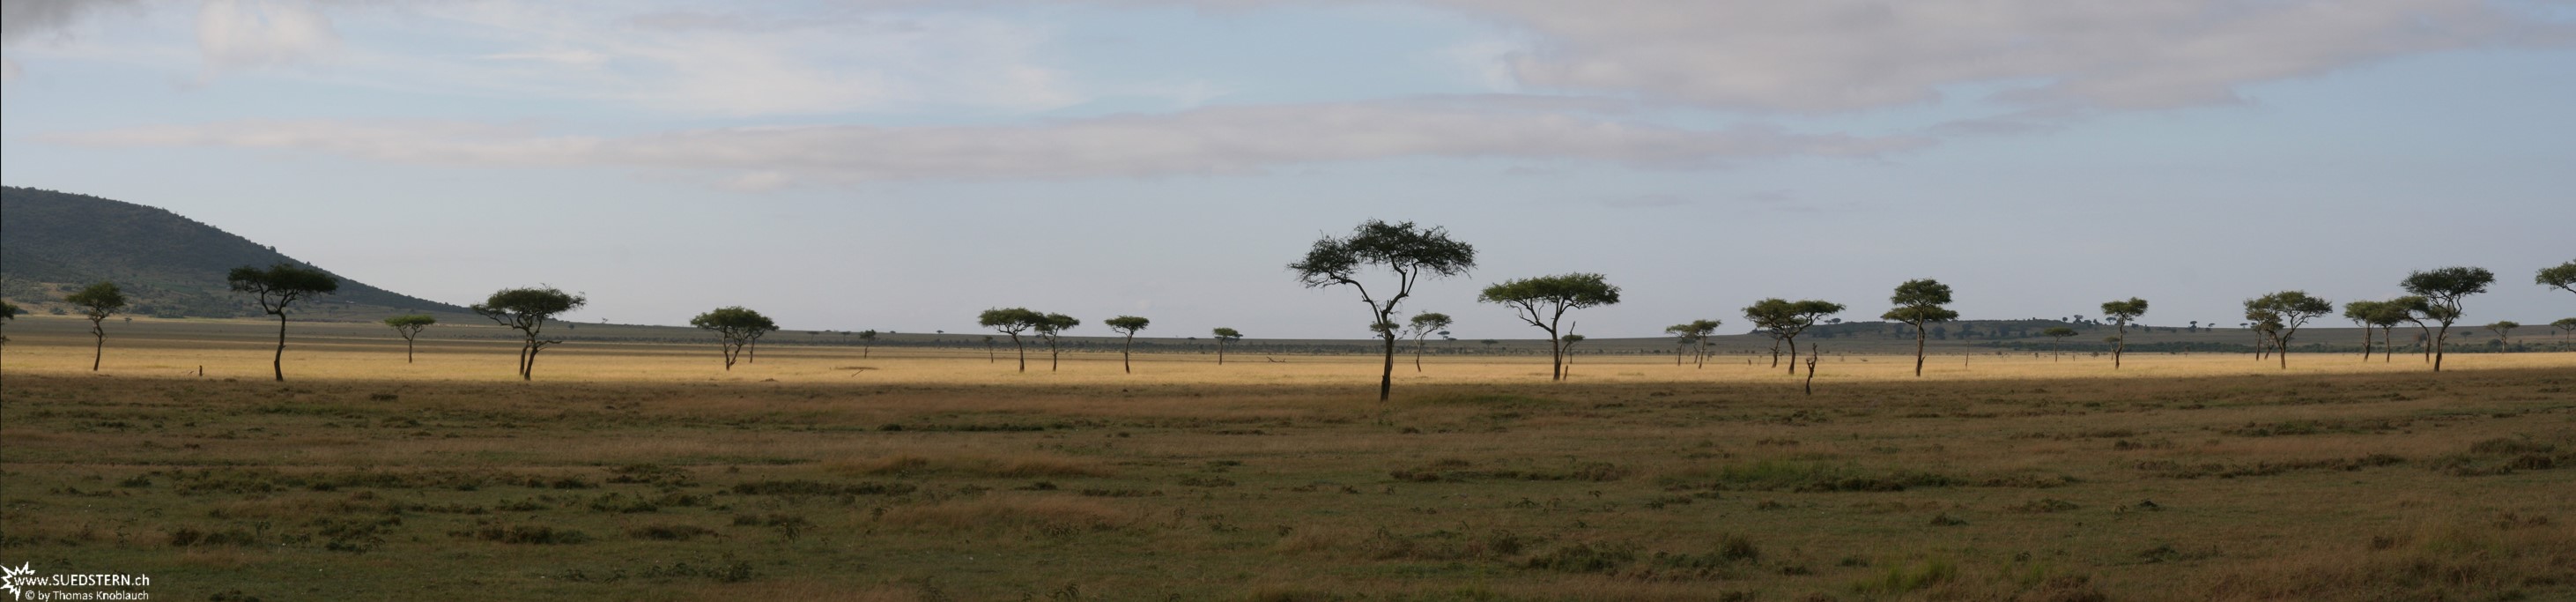 2007-04-14 - Kenya - Massai Mara Panorama